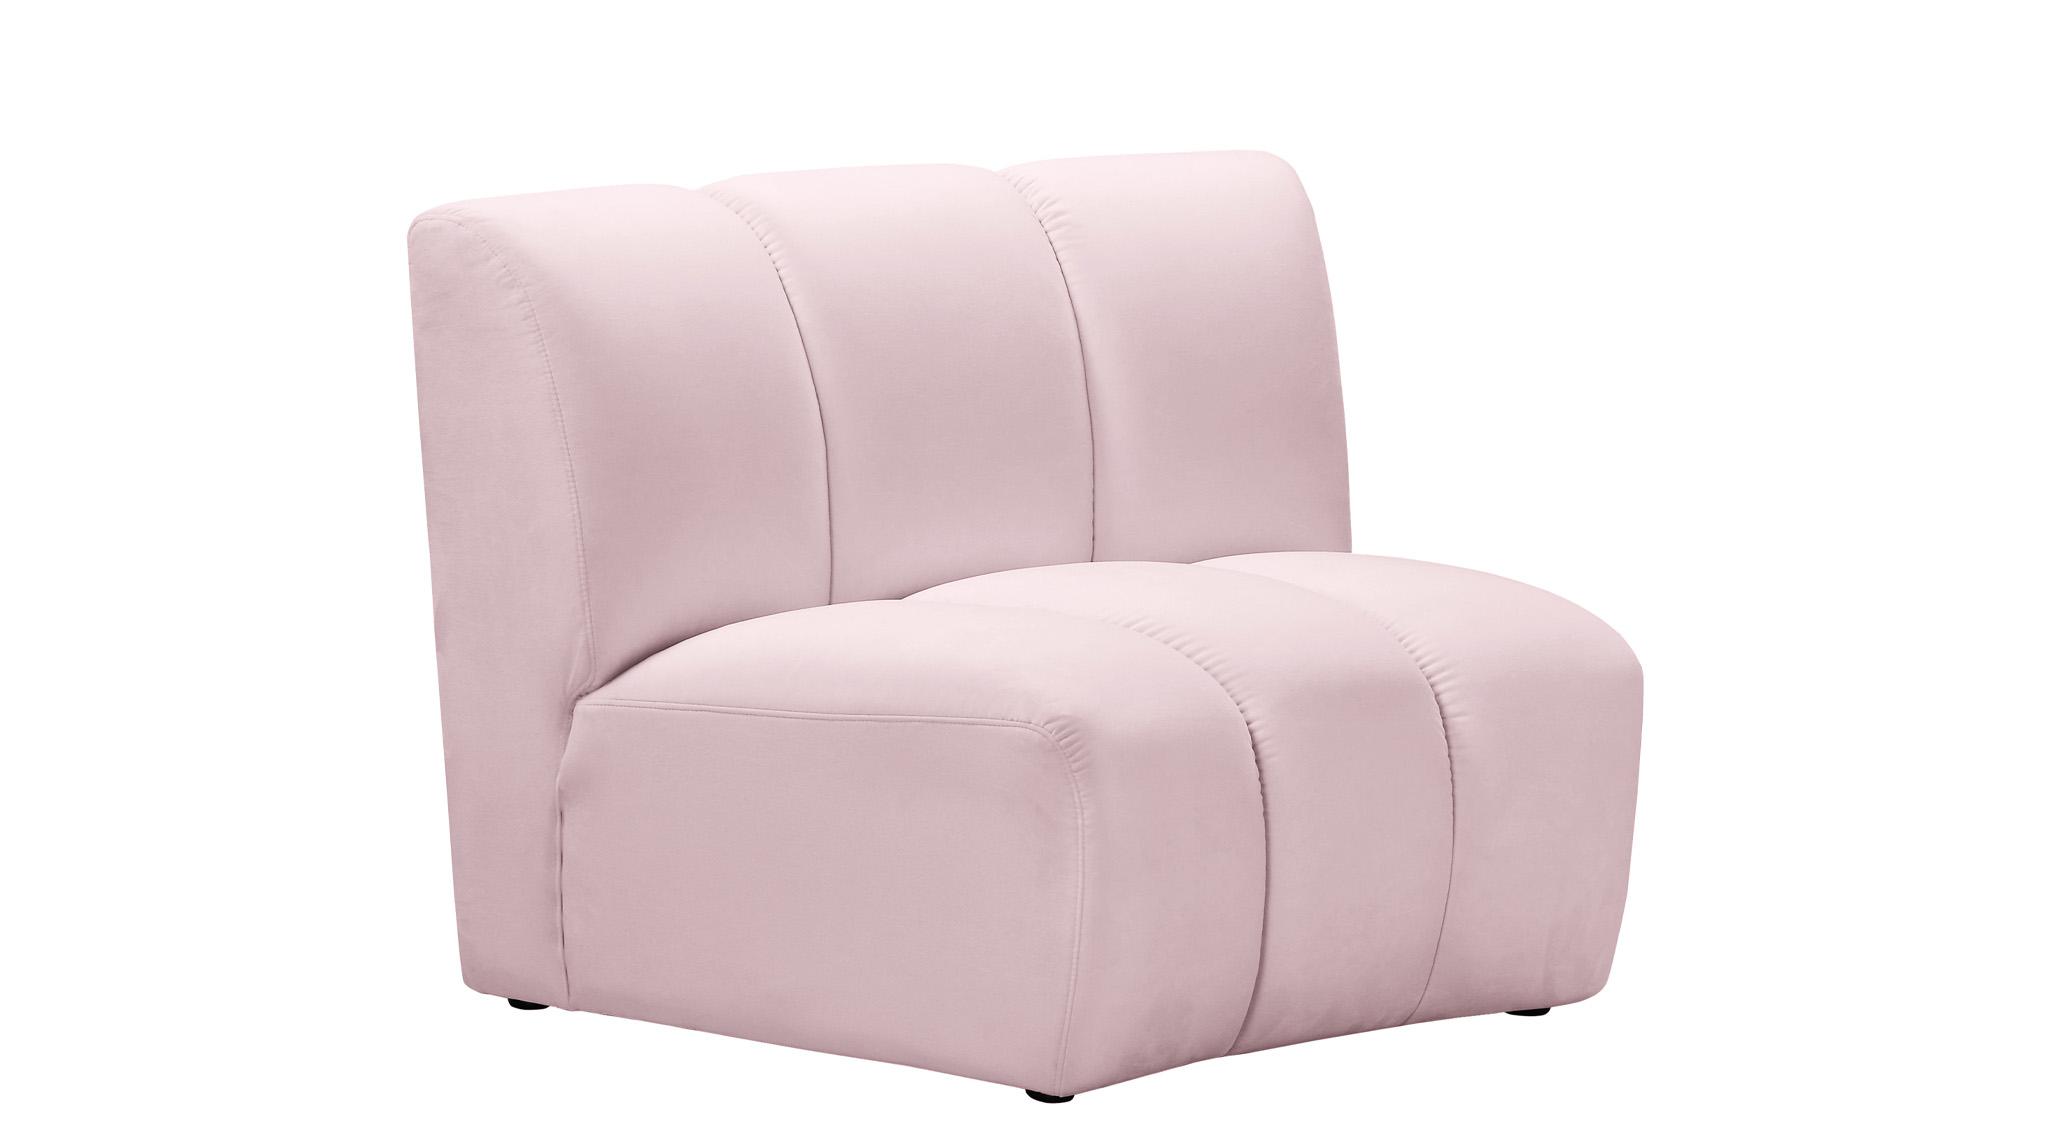 

    
638Pink-11PC Meridian Furniture Modular Sectional Sofa
